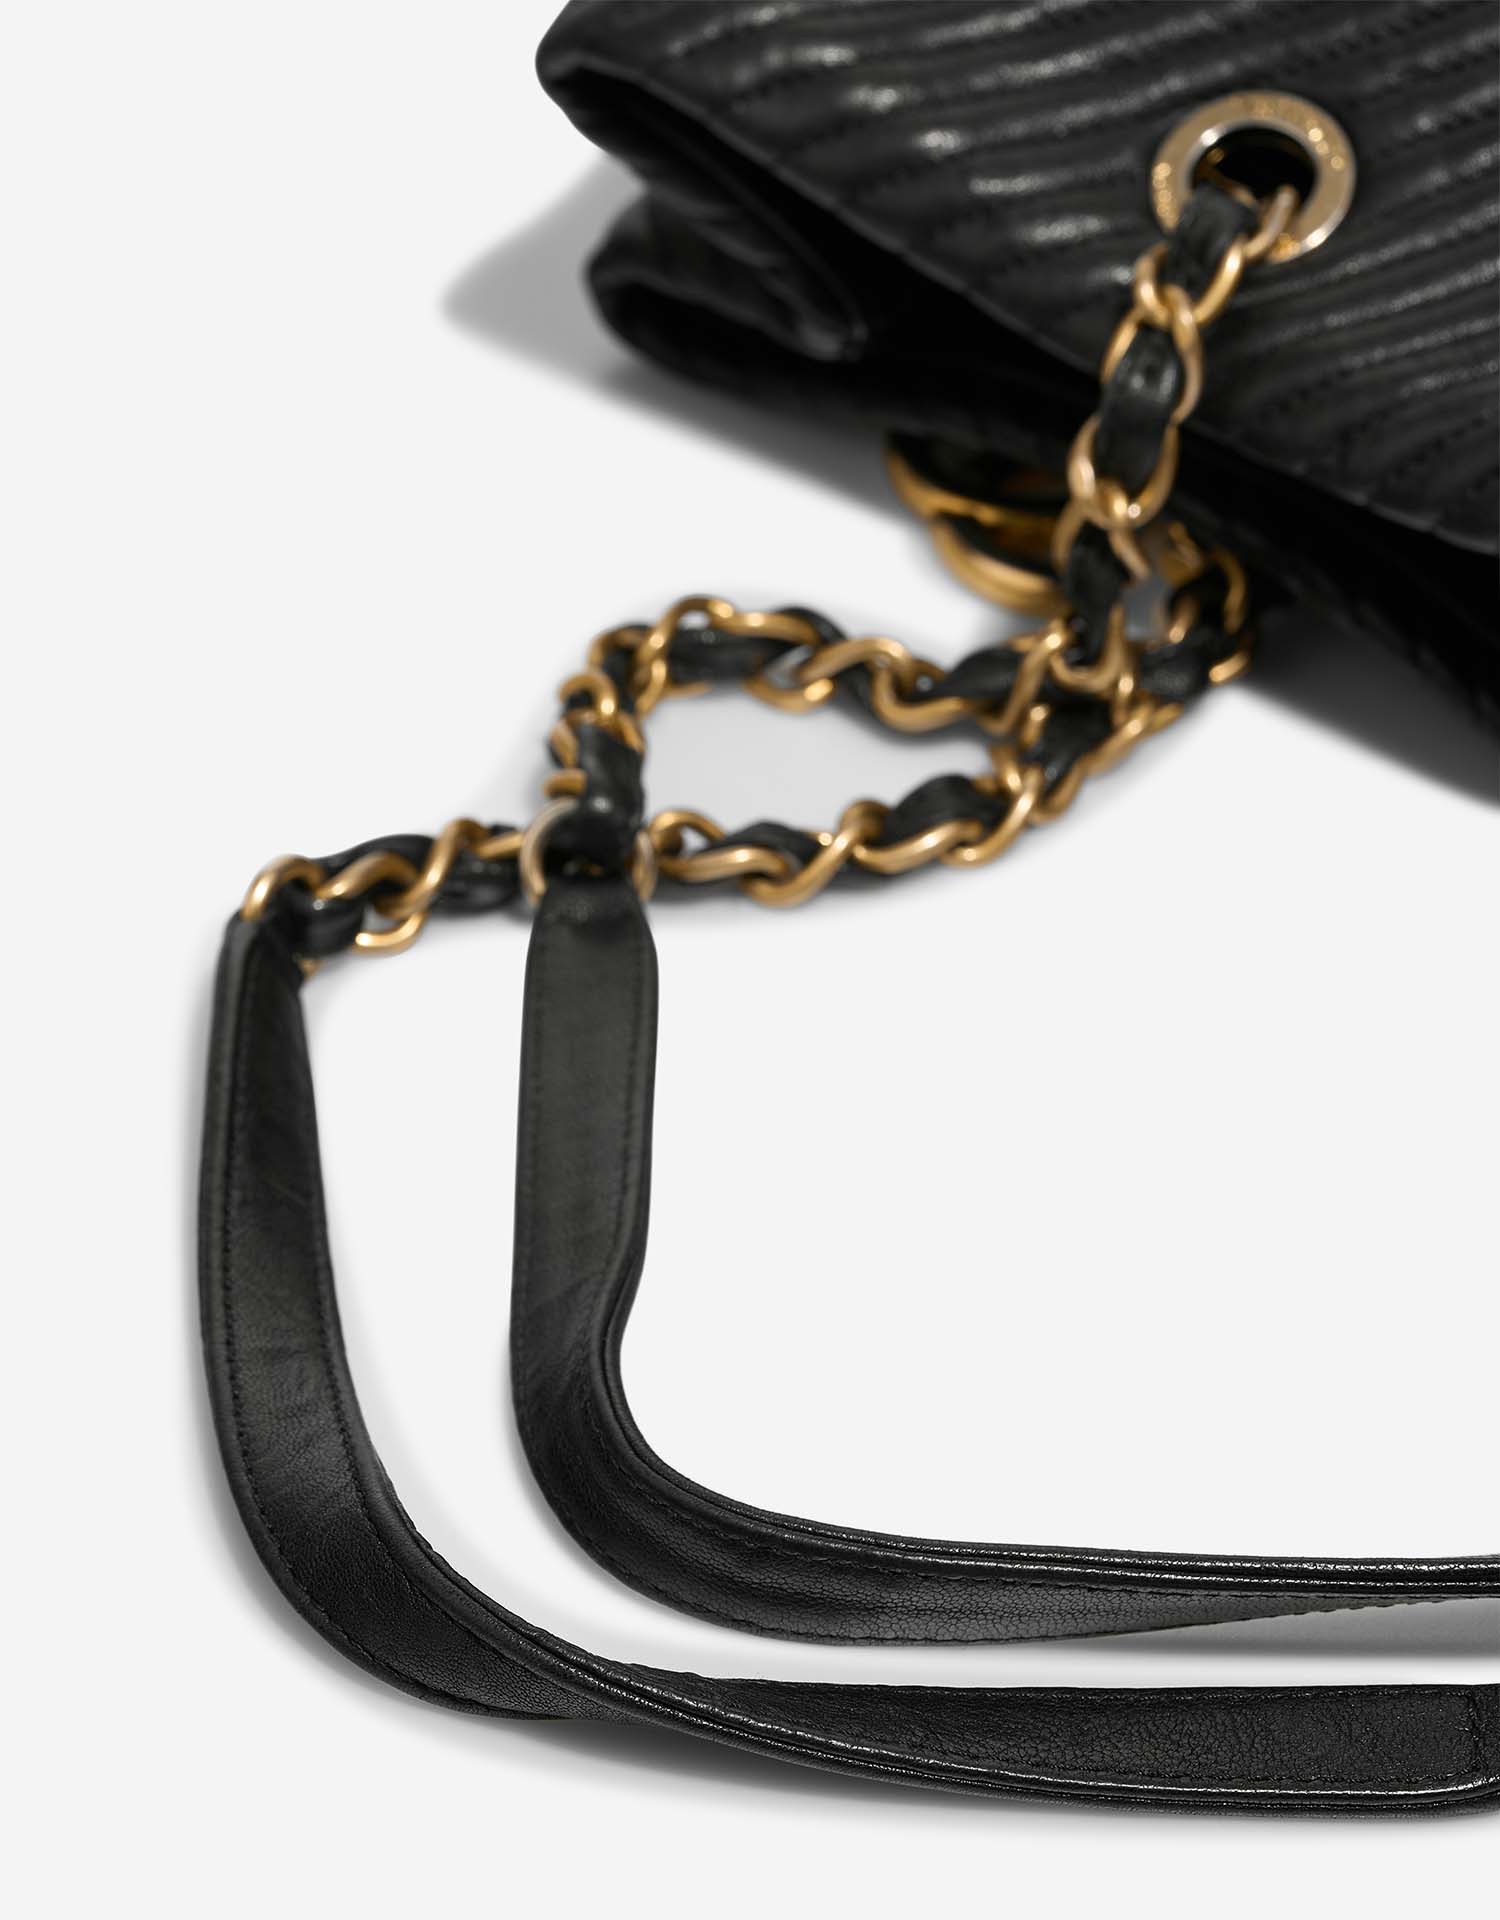 Chanel GST Large Schwarz Gebrauchsspuren 1 | Verkaufen Sie Ihre Designer-Tasche auf Saclab.com